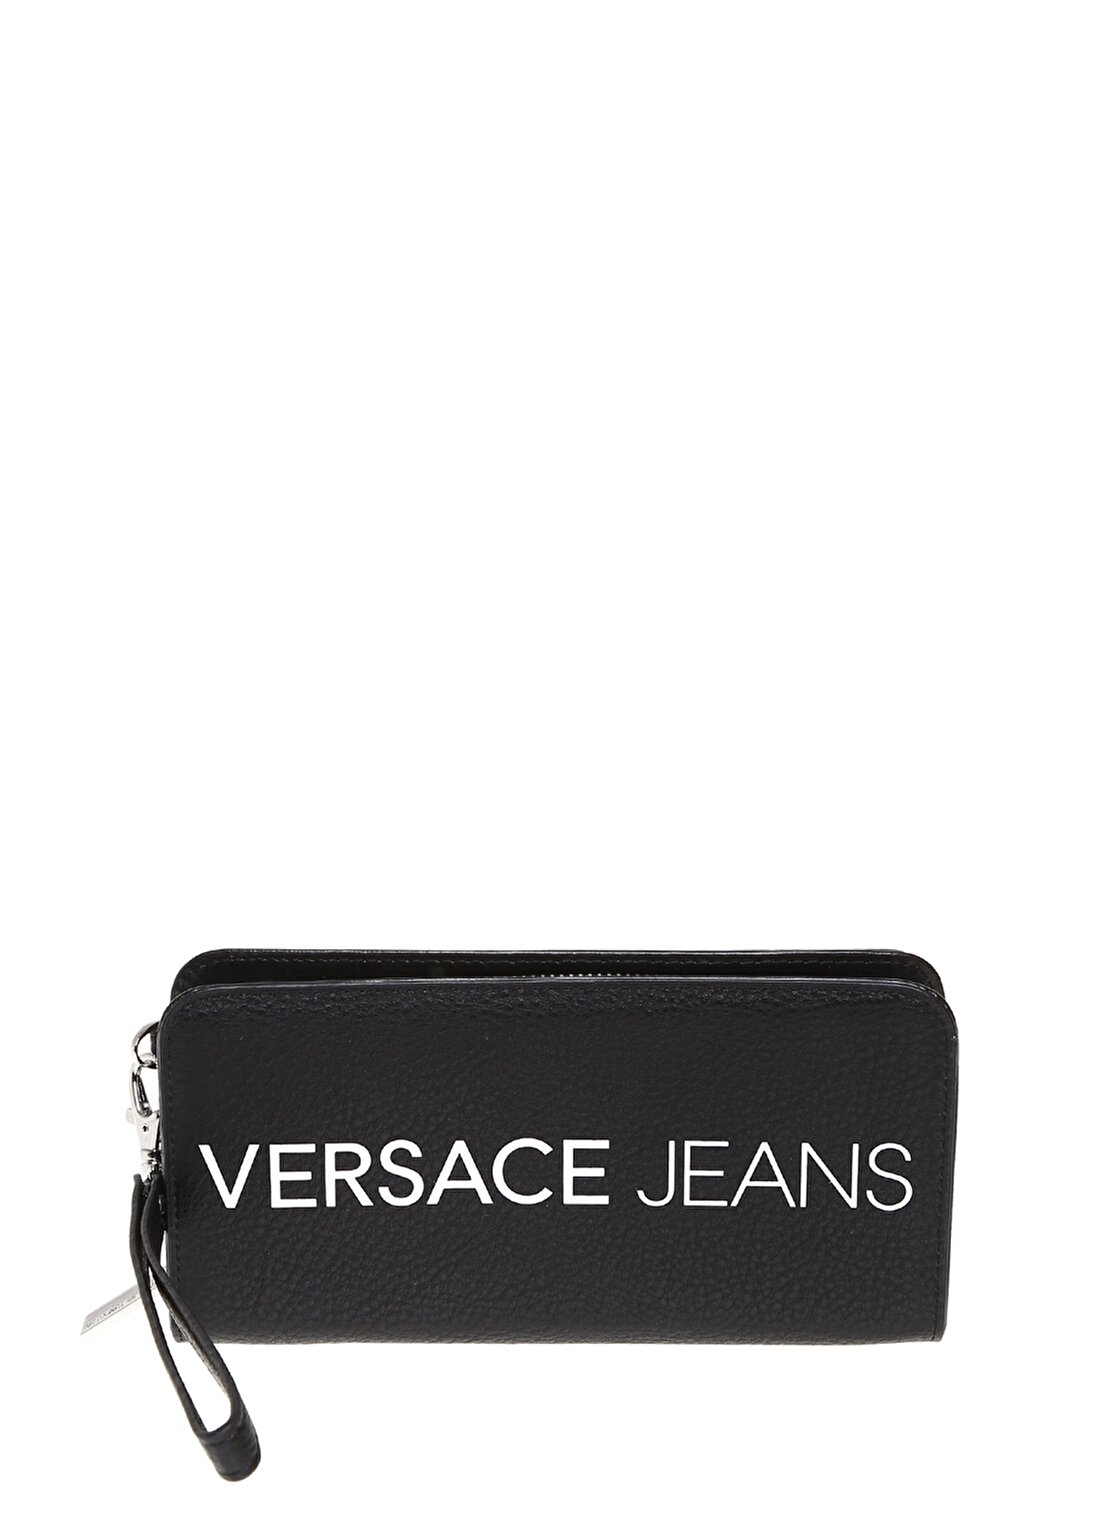 Versace Jeans Yazılı Siyah Cüzdan